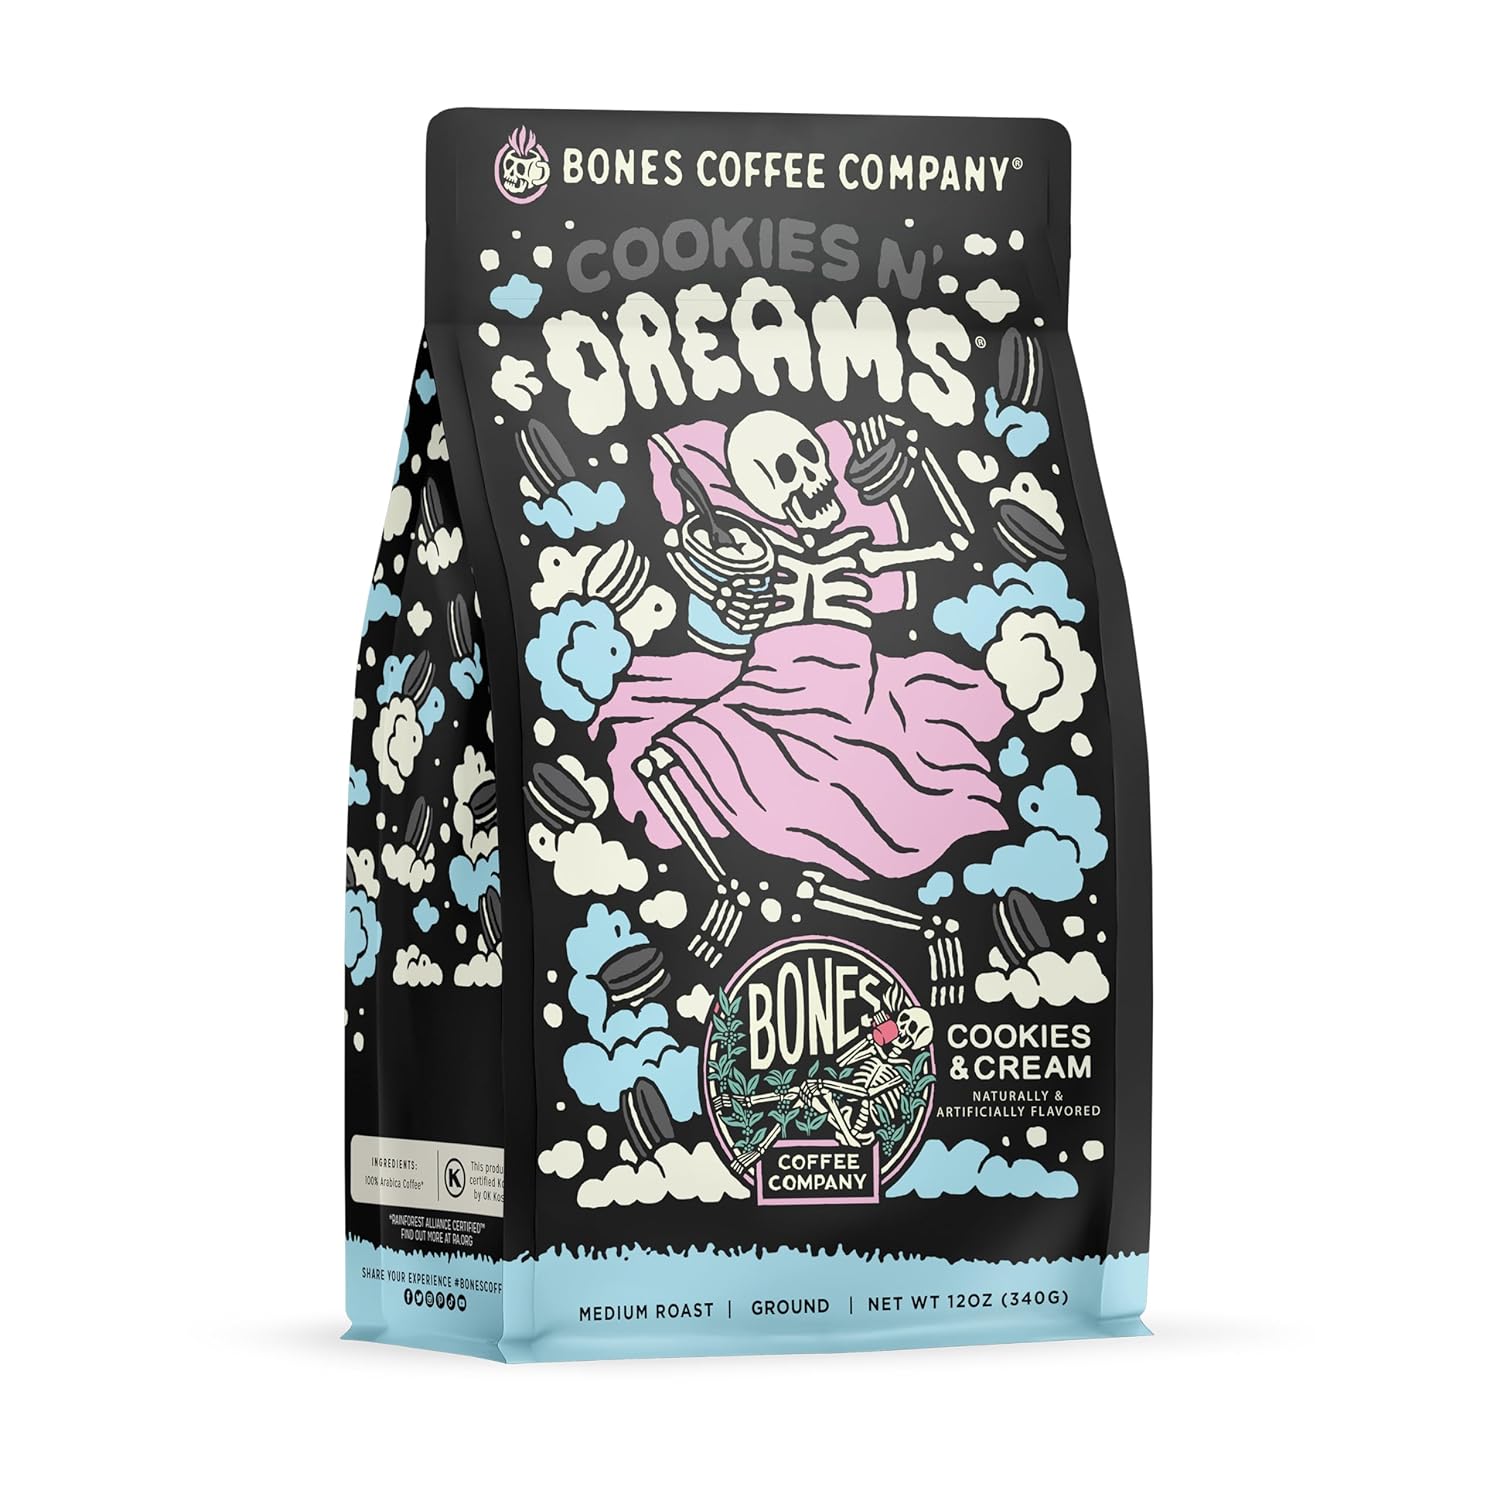 Bones Coffee Company Cookies 'N Dreams Flavored Coffee Beans & Ground Coffee Cookies & Cream Flavor | 12 oz Medium Roast Arabica Low Acid Coffee | Gourmet Coffee (Ground)